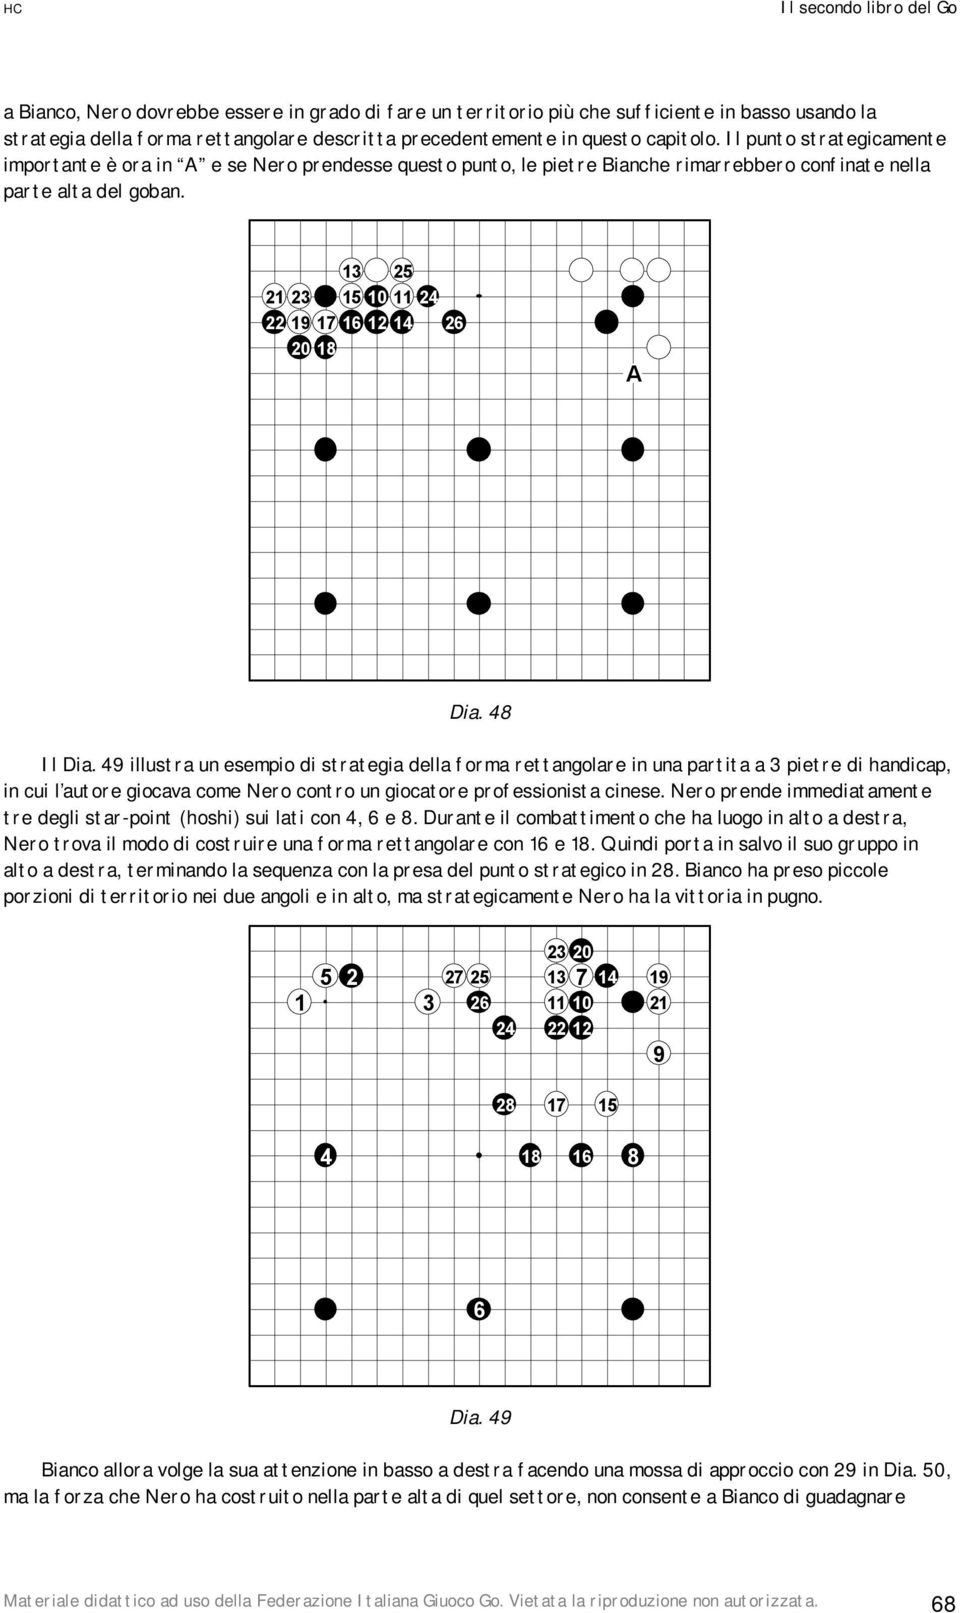 illustra un esempio di strategia della forma rettangolare in una partita a pietre di handicap, in cui l autore giocava come Nero contro un giocatore professionista cinese.